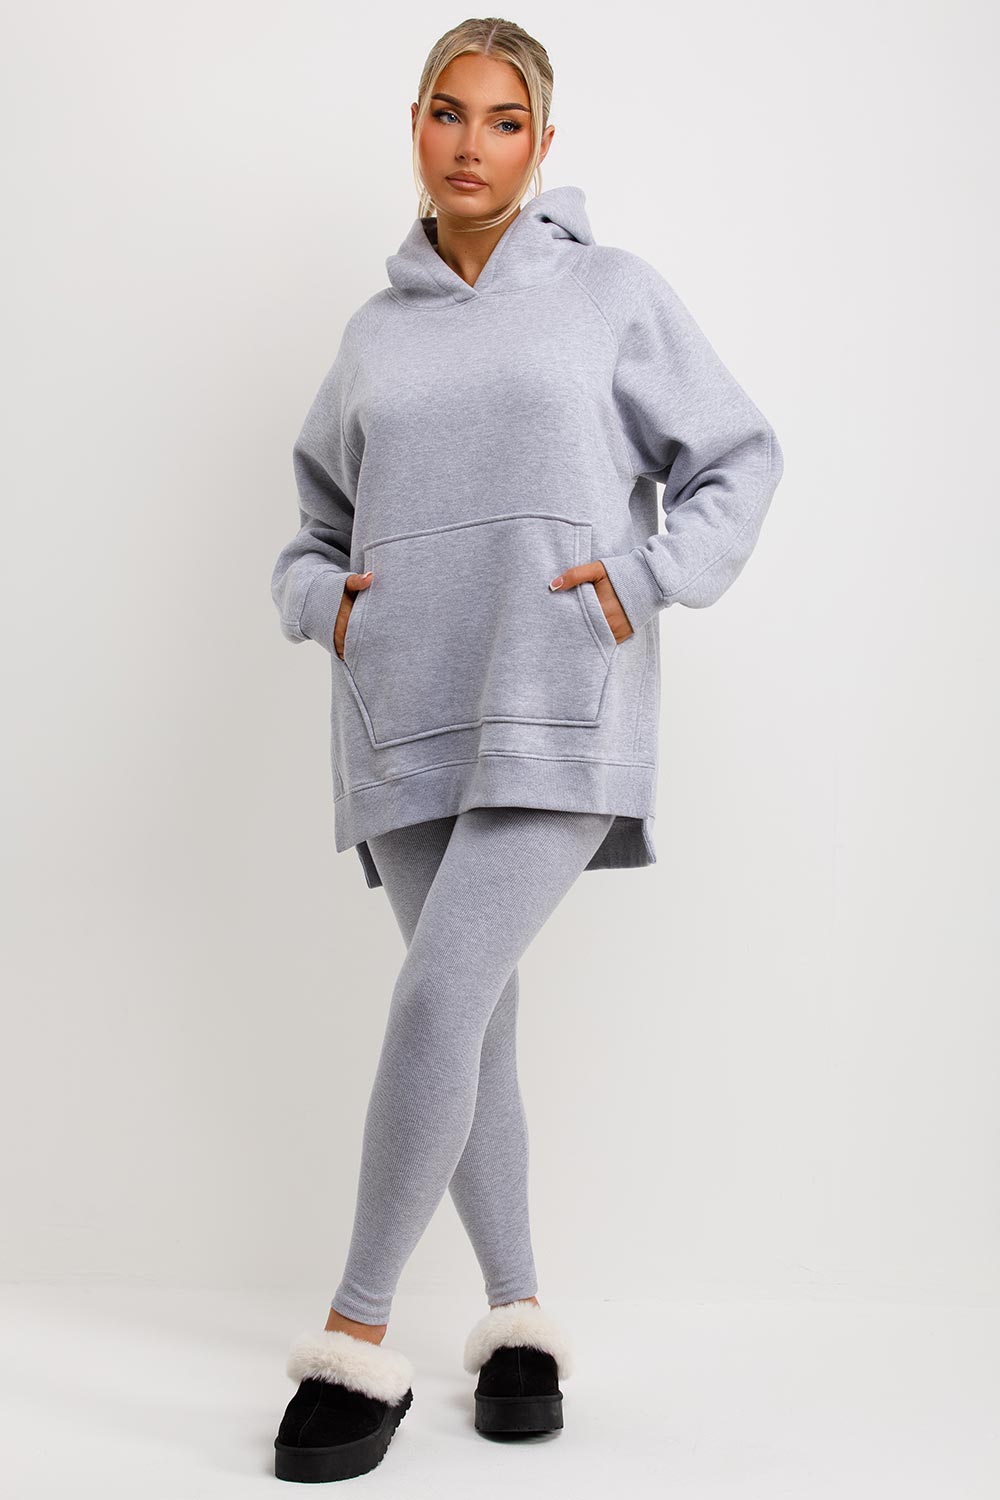 Women's Hoodie And Leggings Set Grey Loungewear –